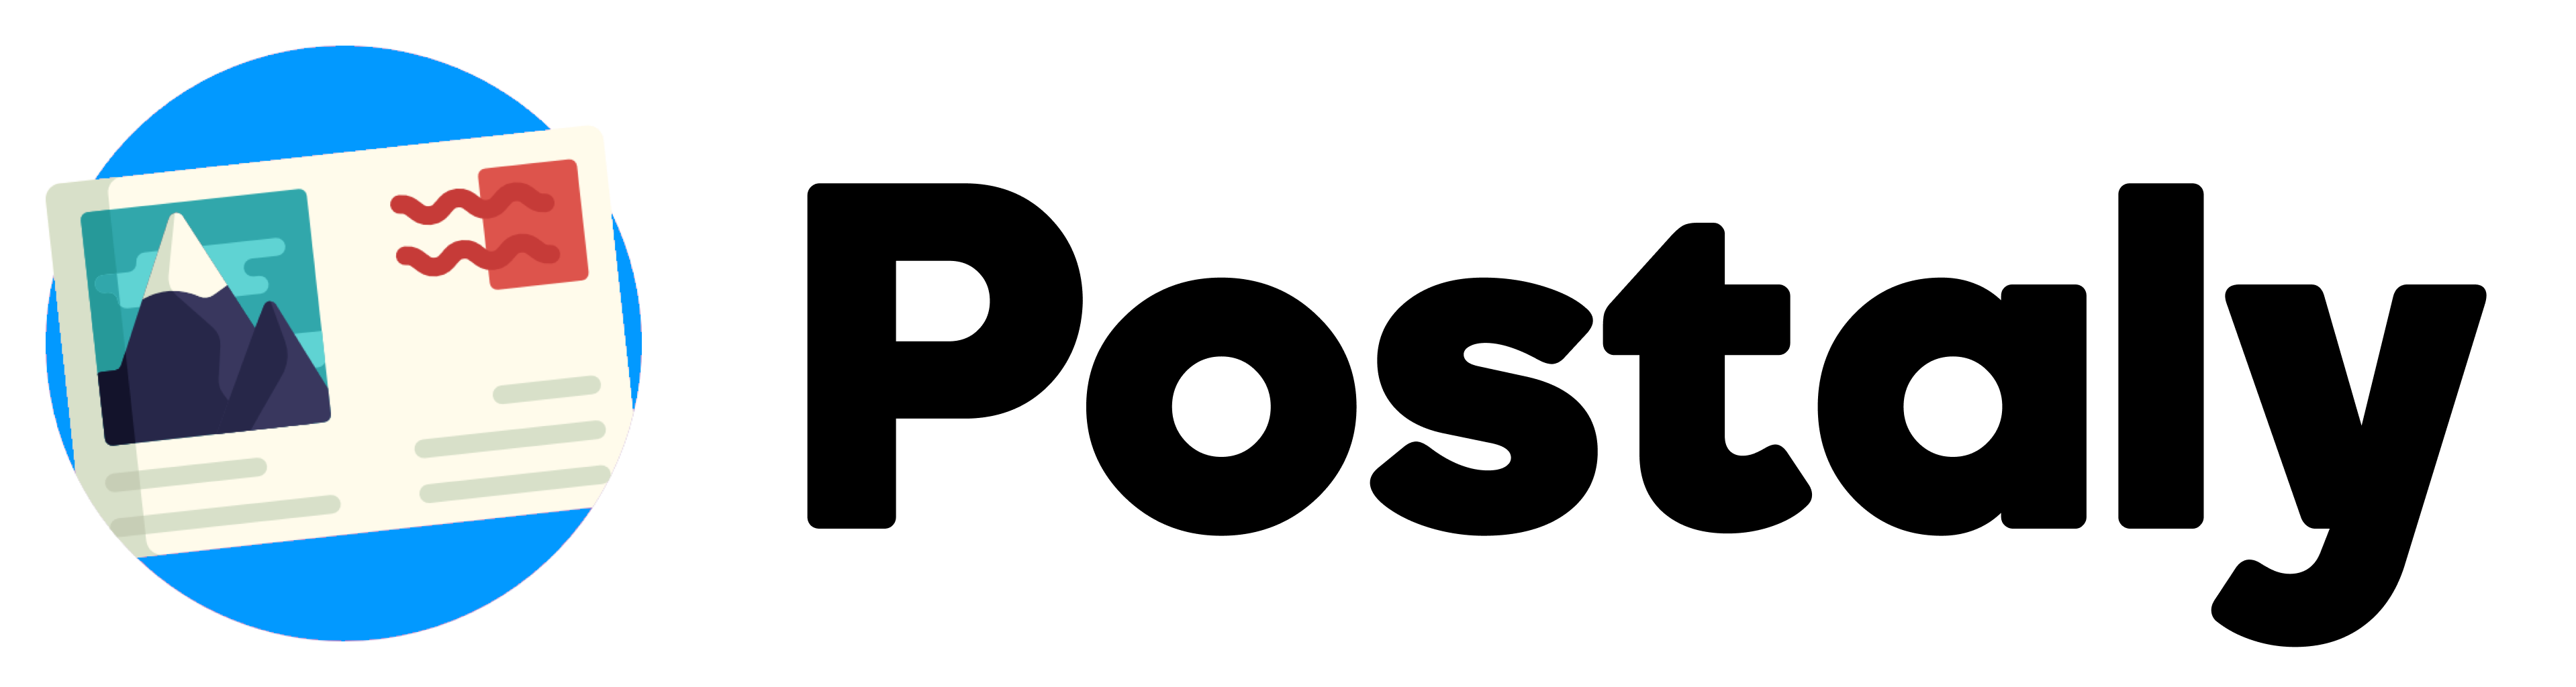 Postaly Logotipo Negro